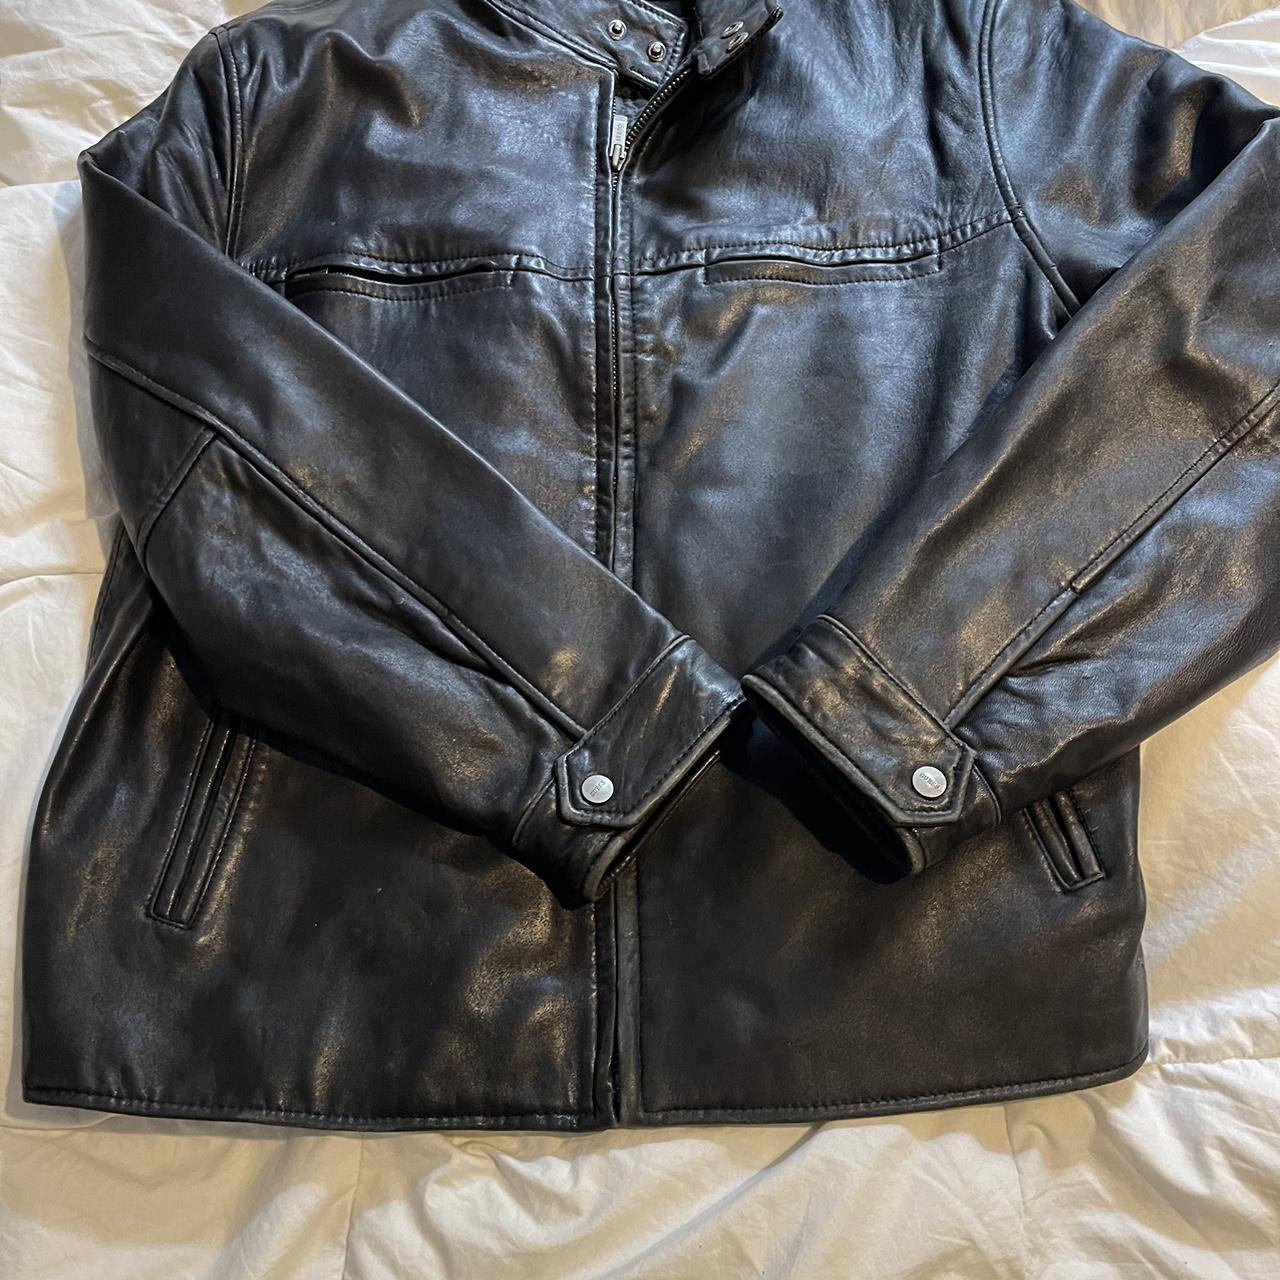 Crazy genuine guess leather jacket vintage. Minor... - Depop